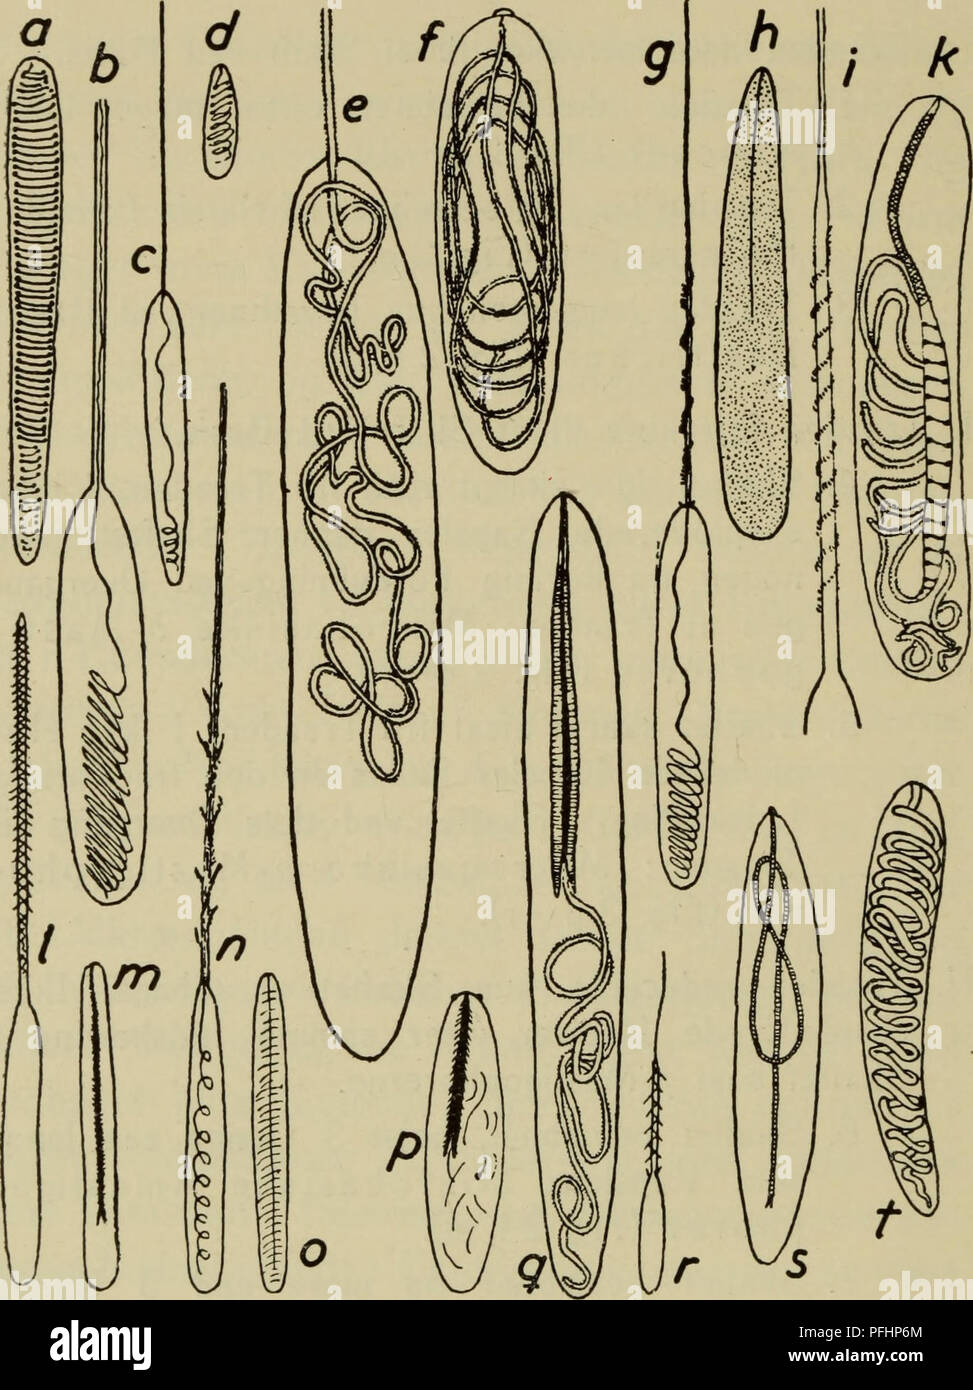 . Danmarks fauna; illustrerede haandbøger over den danske dyreverden... 16. Fig. 2. a—s Nematocyster; a—d Atricher, a, c af Protanthea simplex, b af Cerianthus lloydii, d af Kophobelemnon stelliferum; €, f Holotricher, e af Lophelia pertusa, f af Sideractis glacialis; g—k mikrobasiske Z&gt;-Mastigophorer, g af Stomphia coccinea, h af Actinostola callosa, /, k af Pachycerianthus multiplicatus; /, m mi- krobasiske Amastigophorer, / af Sargartiogeton viduatus, m af Sar- gartiogeton undatus; n, o Basitricher af Octineon suecicum; p—v mikrobasiske p-Mastigophorer, p af Rhodactis sinensis, q af Loph Stock Photo